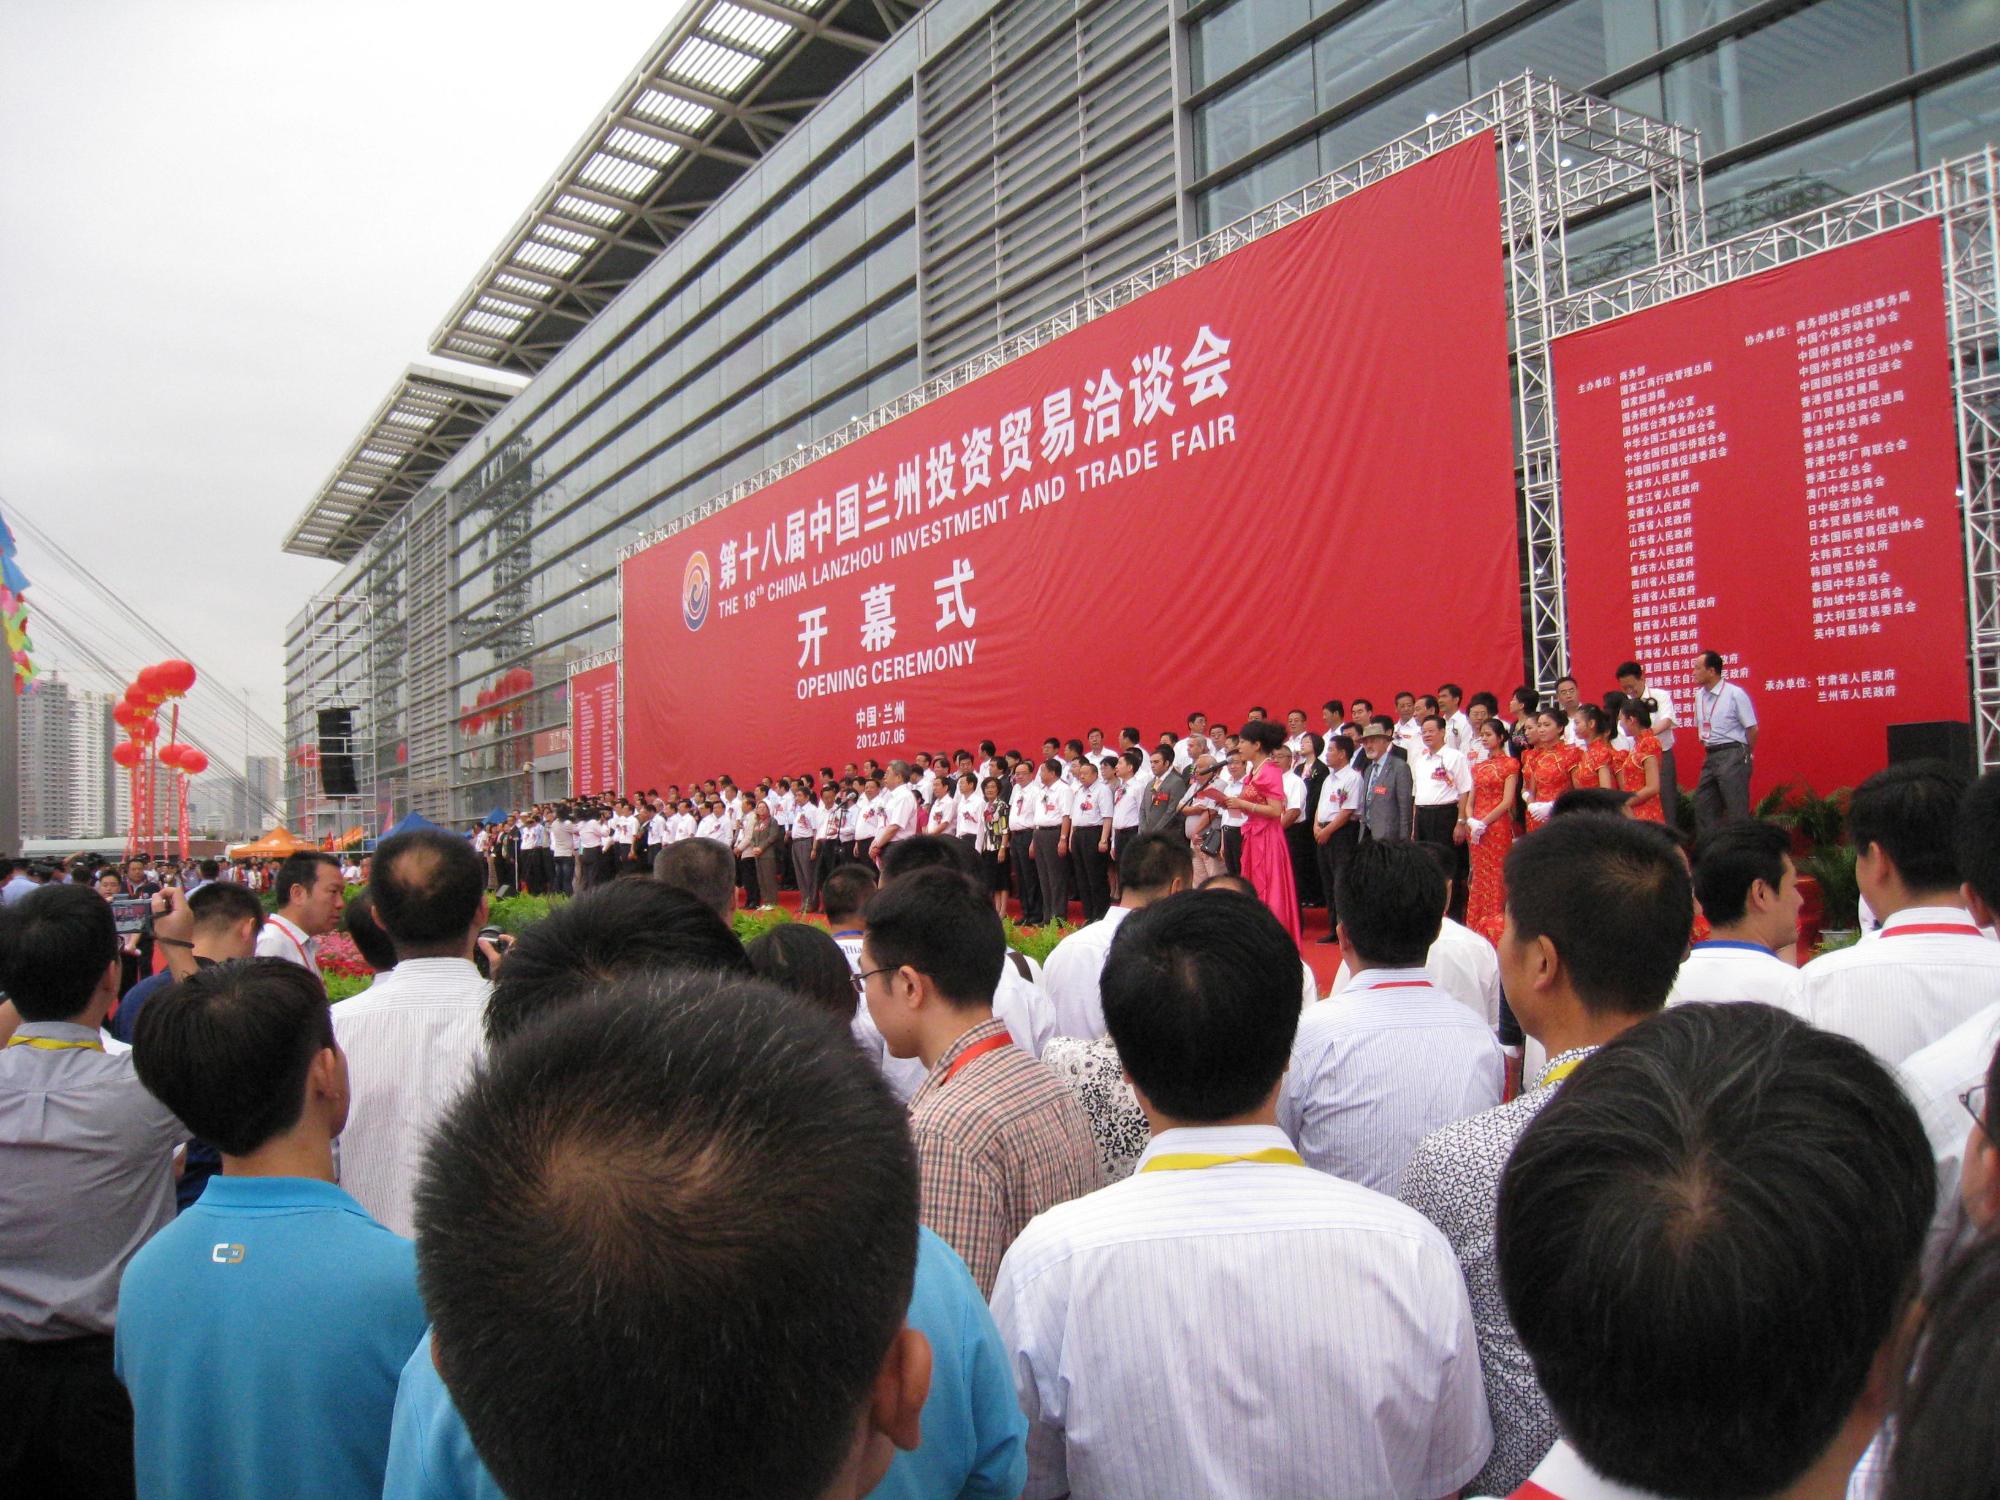 50メートルほど横幅のある朱色の横断幕の前に同じ幅のステージがあり、その壇上に百人を超す白いシャツを着た出席者が立っている写真